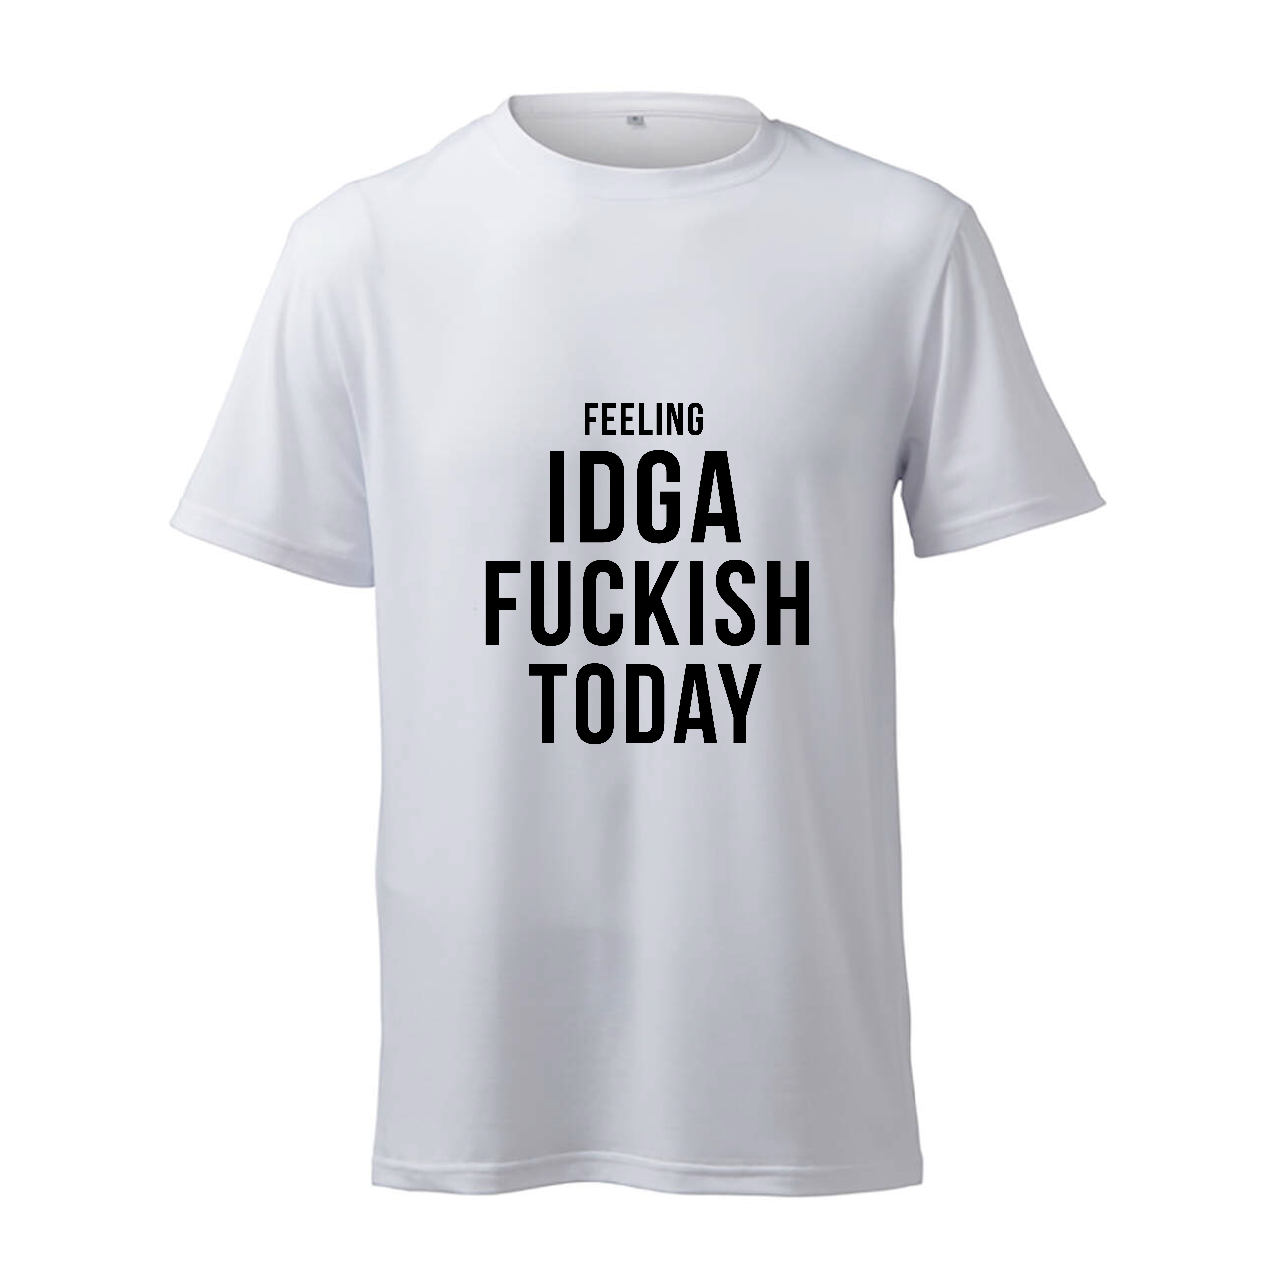 Feeling IDGA Fuckish Today - T-Shirt